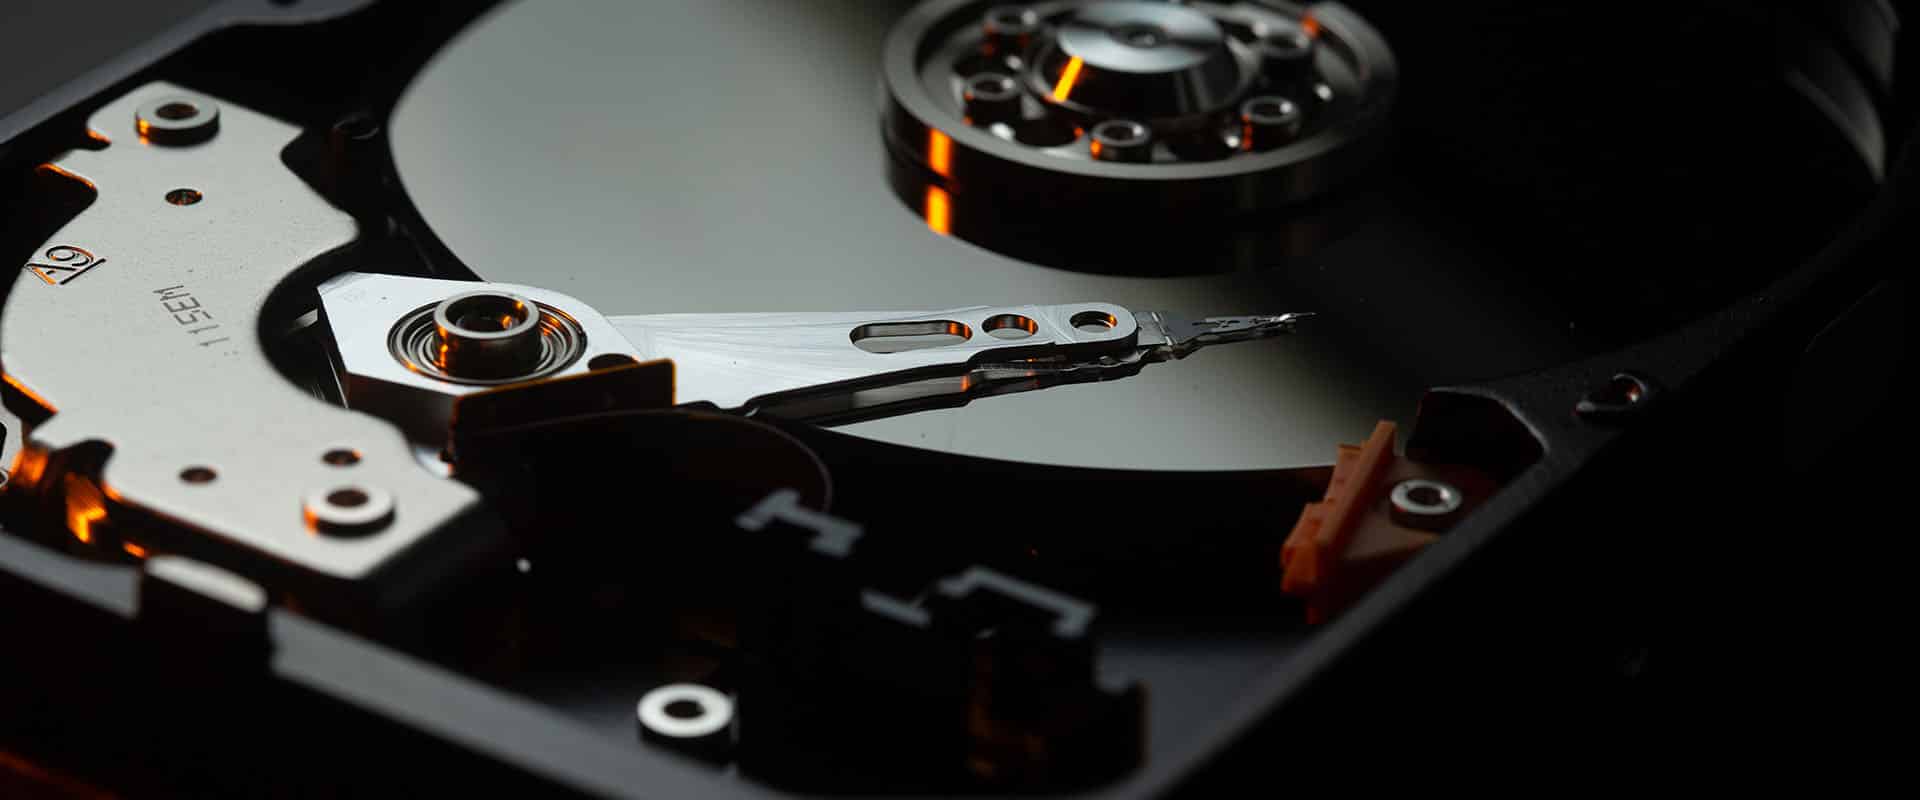 Comment blanchir / détruire un disque dur avant de le jeter ?